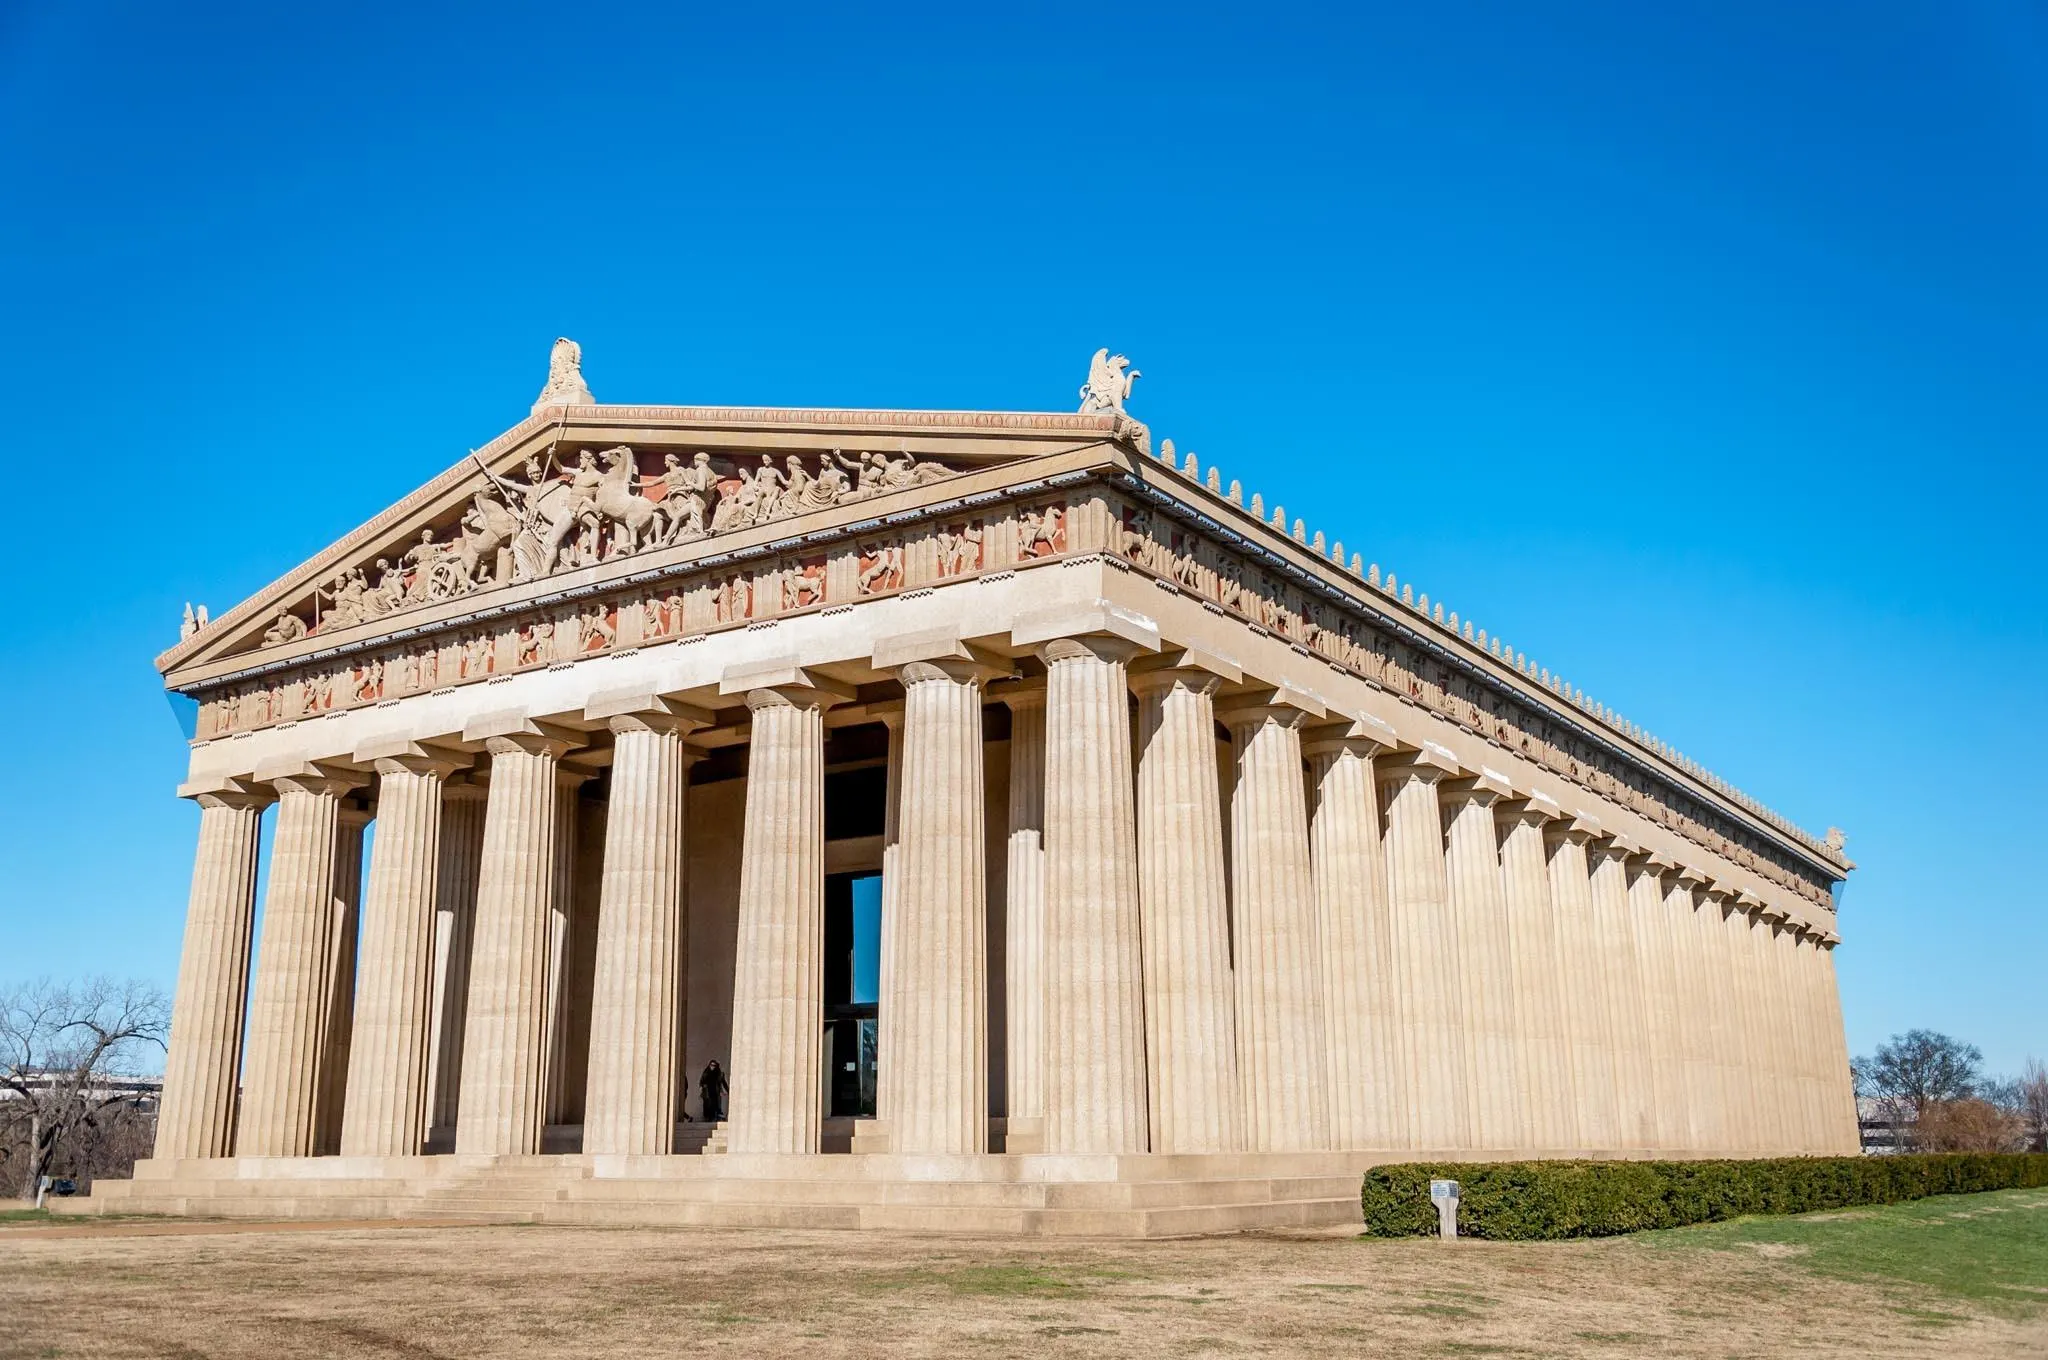 The Parthenon replica in Nashville